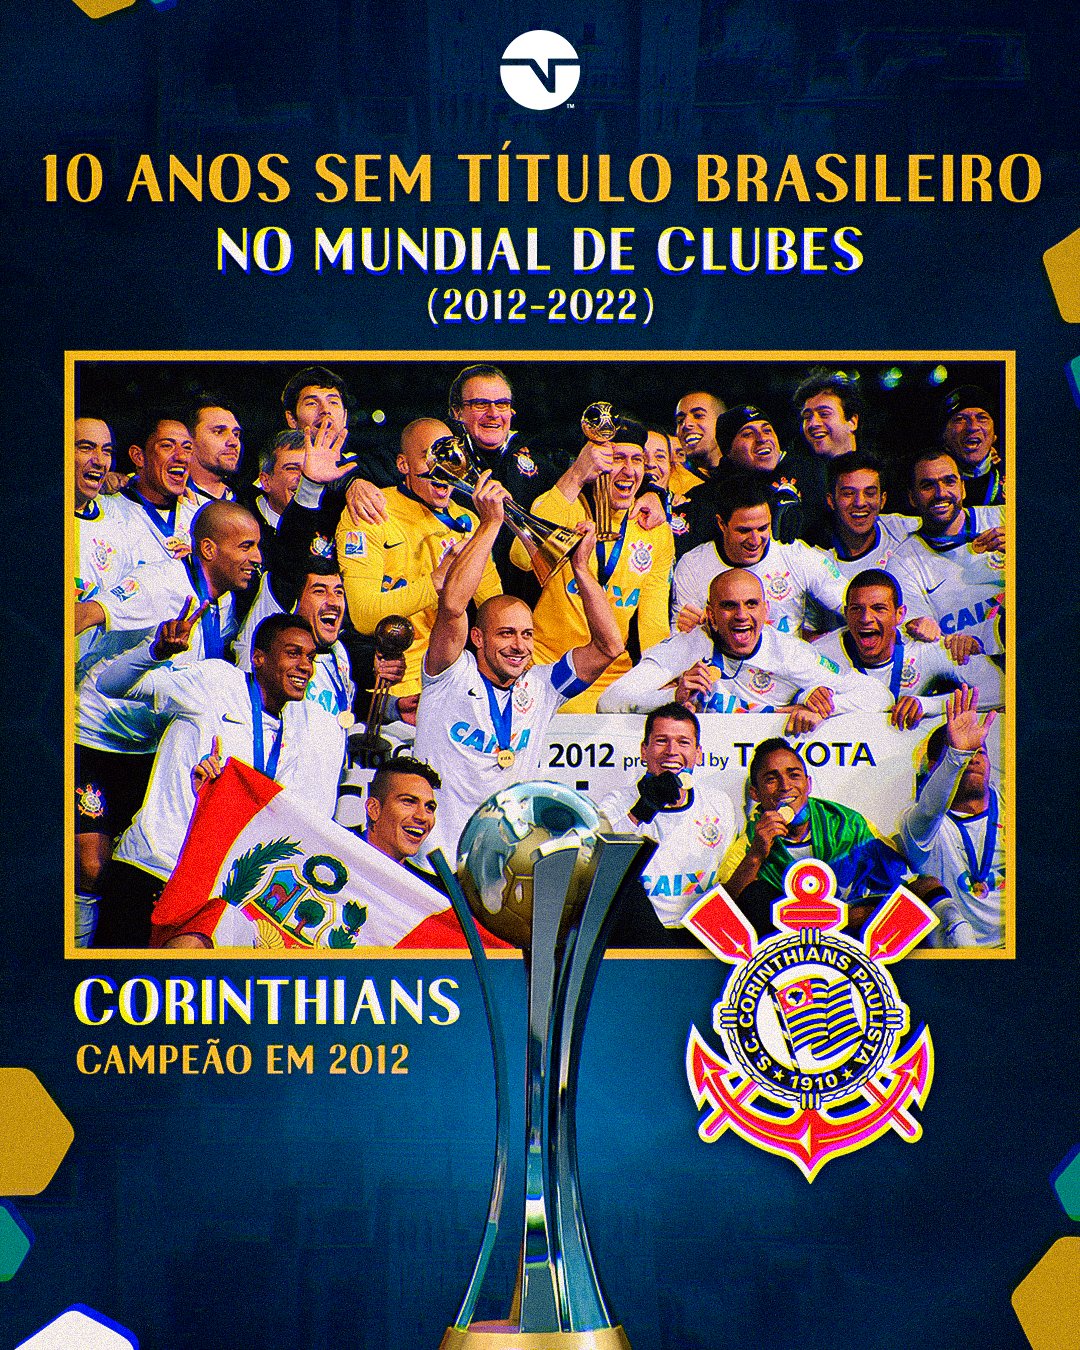 TNT Sports Brasil - O único clube brasileiro a ser tricampeão mundial! TEM  QUE RESPEITAR! 👏